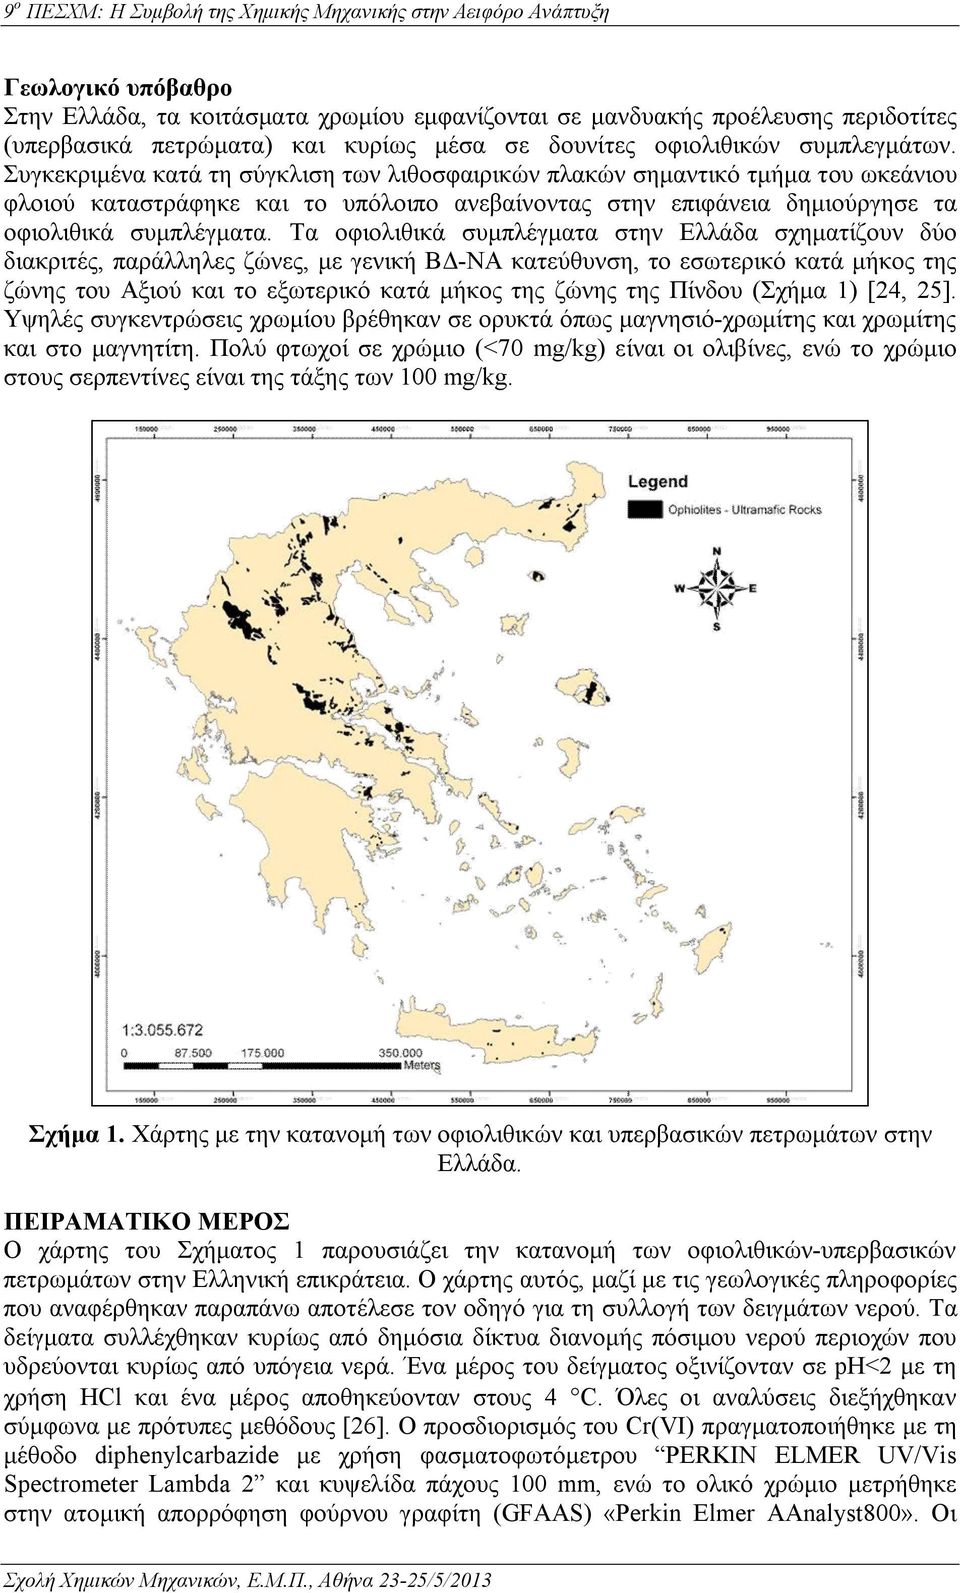 Τα οφιολιθικά συμπλέγματα στην Ελλάδα σχηματίζουν δύο διακριτές, παράλληλες ζώνες, με γενική ΒΔ-ΝΑ κατεύθυνση, το εσωτερικό κατά μήκος της ζώνης του Αξιού και το εξωτερικό κατά μήκος της ζώνης της